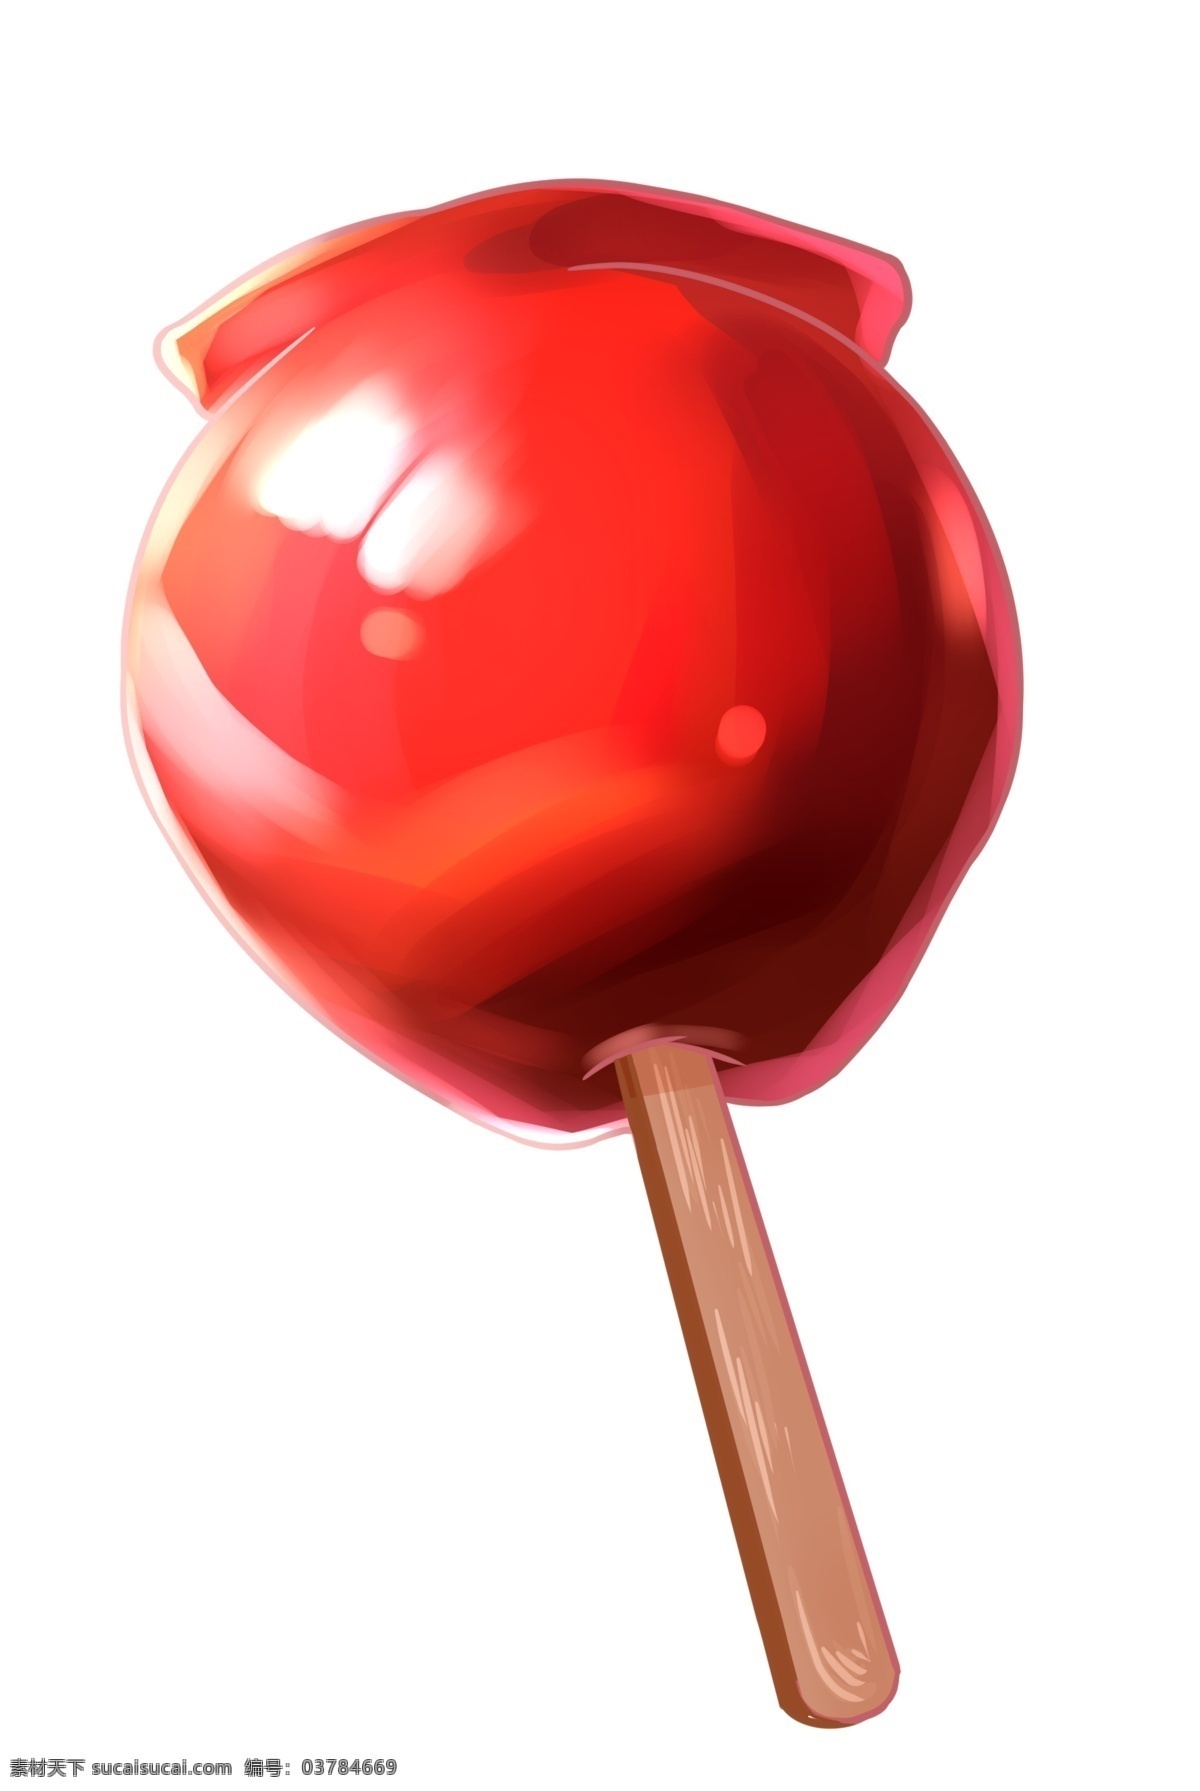 日本 红色 糖葫芦 插画 红色的糖葫芦 卡通插画 日本插画 日本产物 日本风情 日本物品 日本的糖葫芦